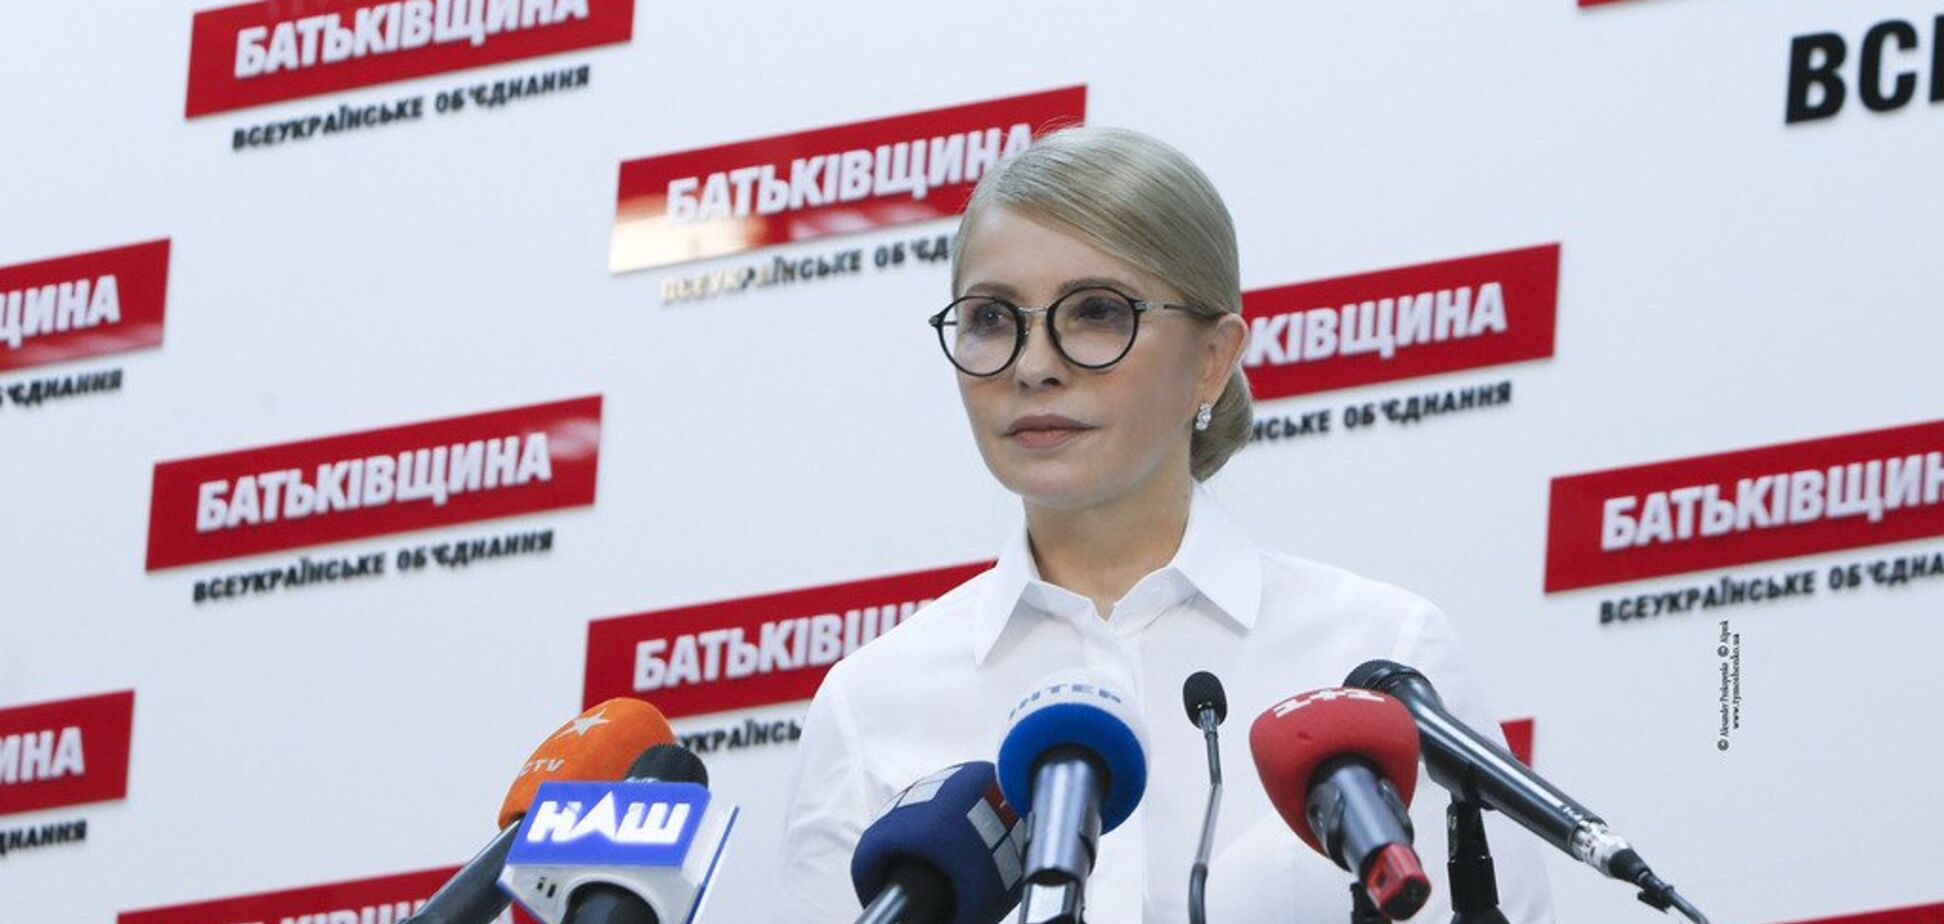 Тимошенко єдина, хто пропонує системні рішення замість популізму – Одарченко